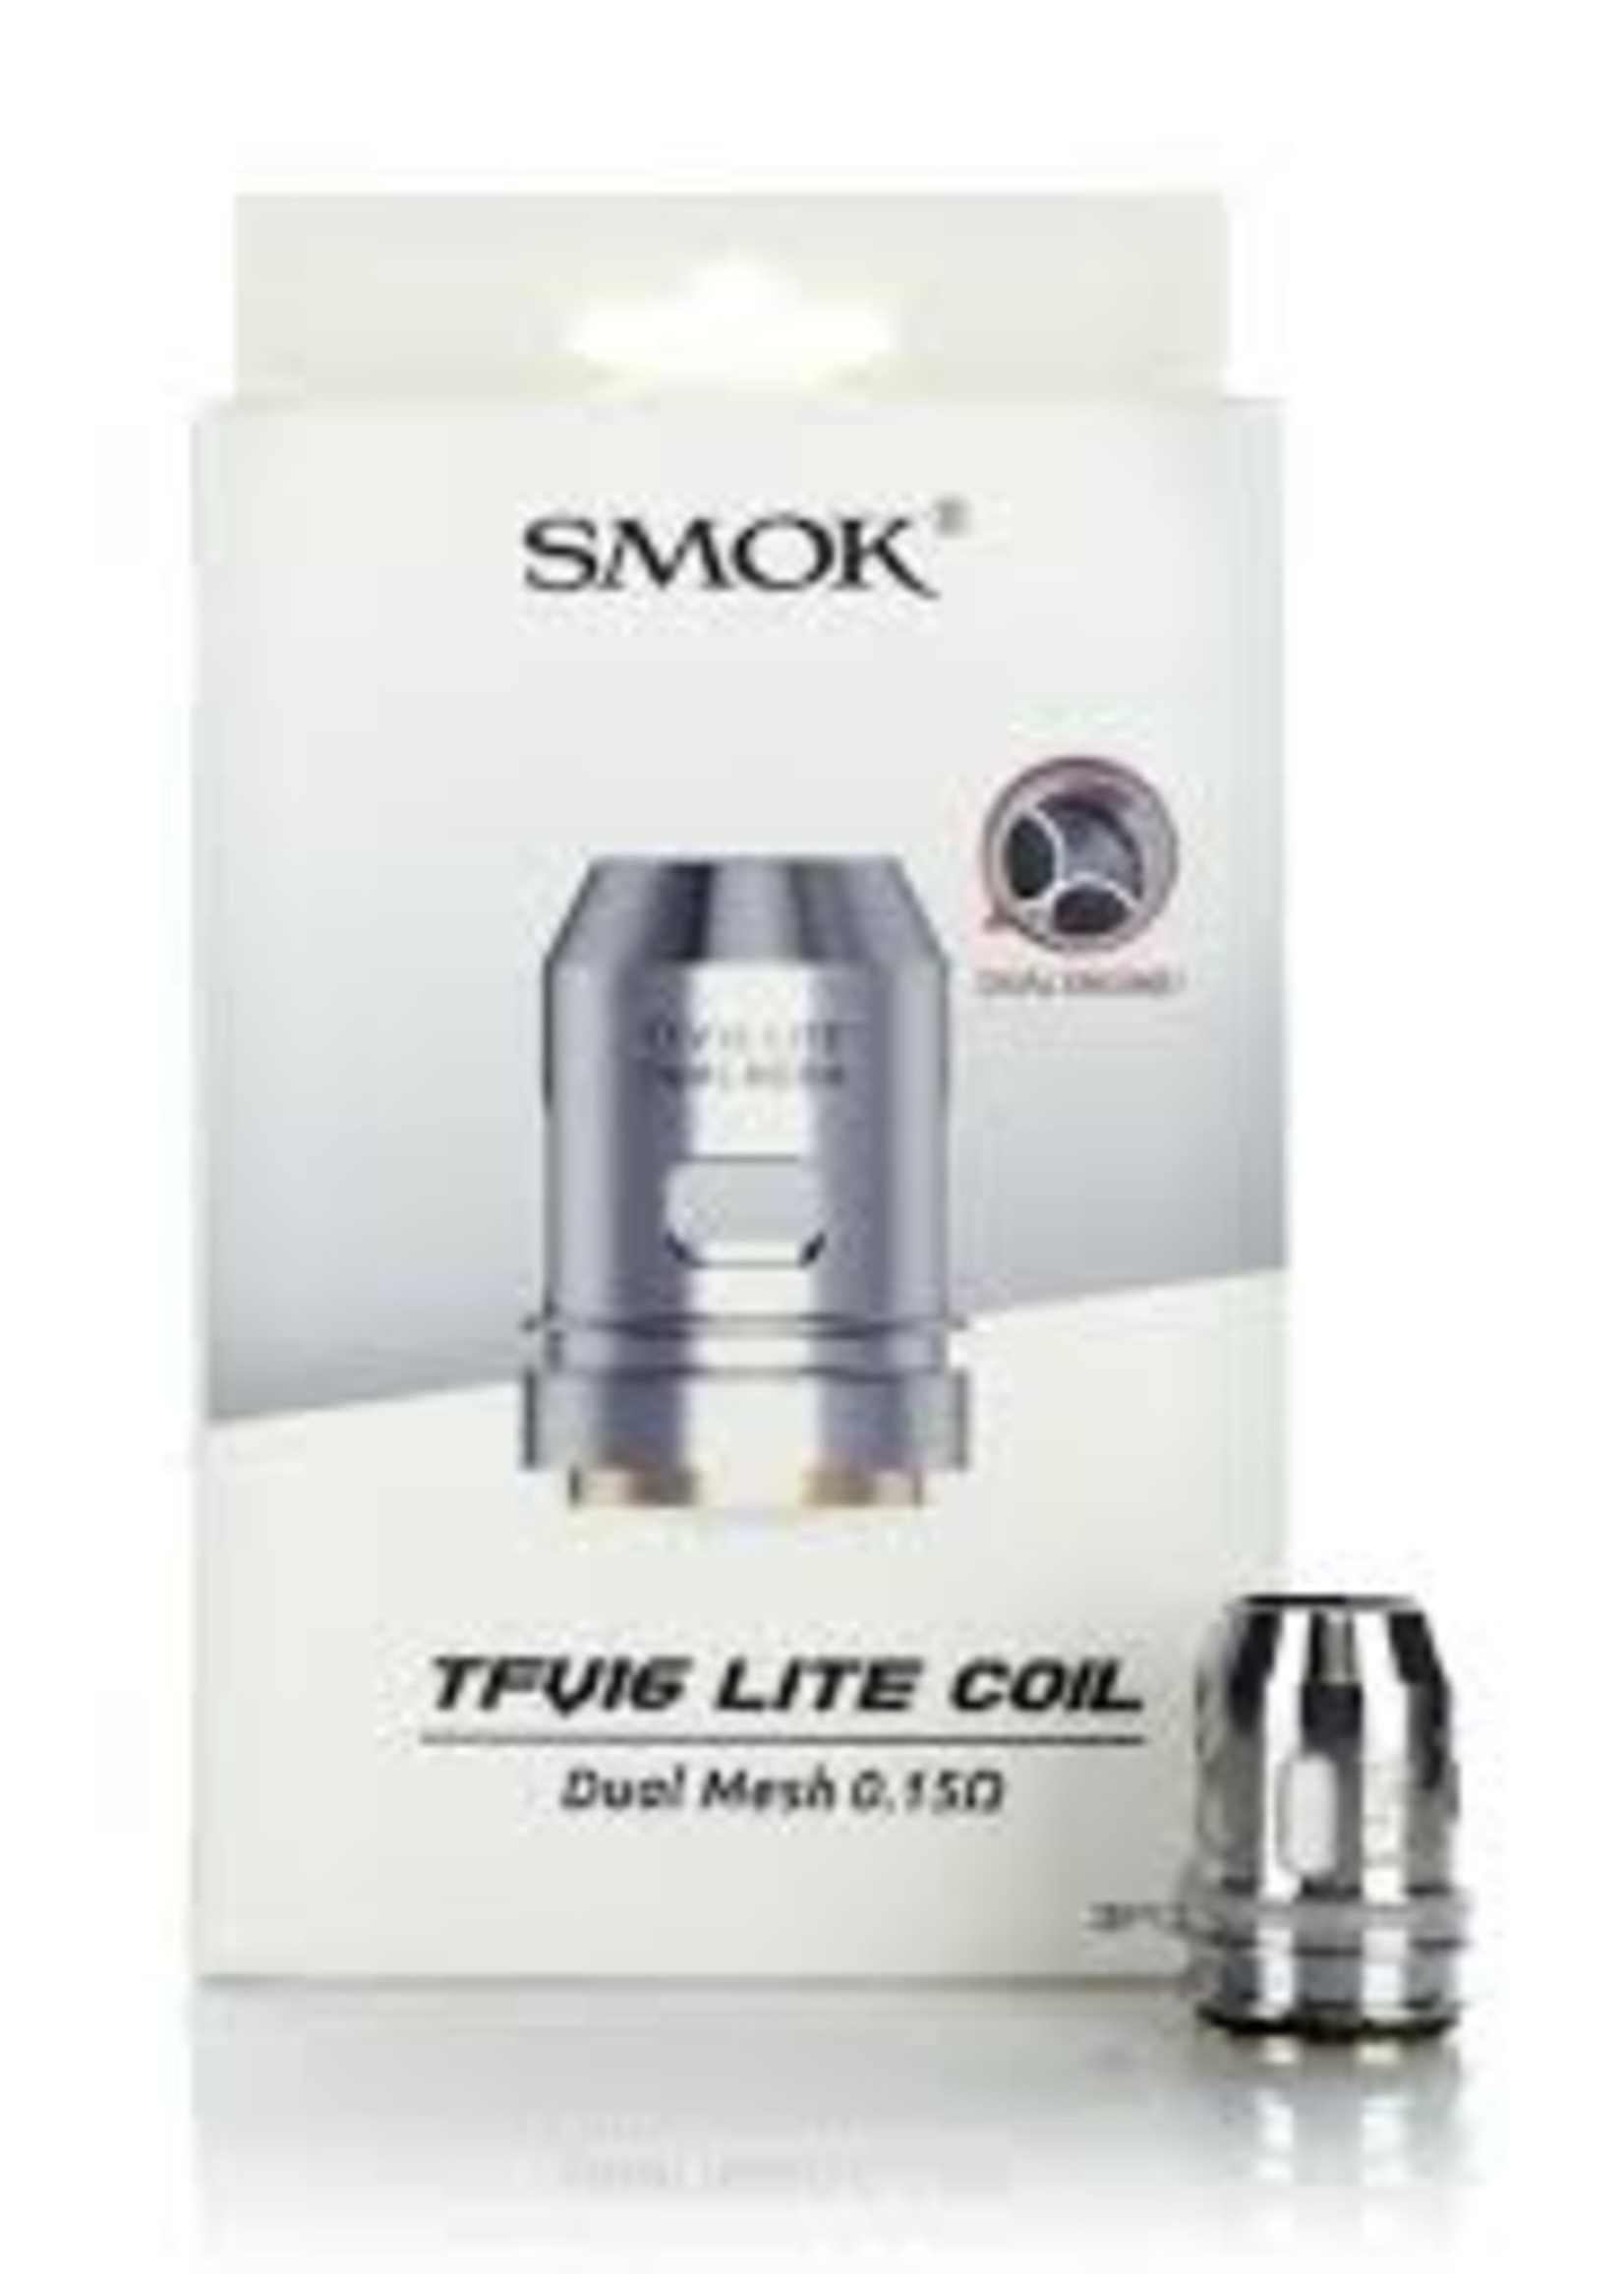 Smok Smok TFV16 Lite Coil Dual Mesh 0.15ohm - 3pk